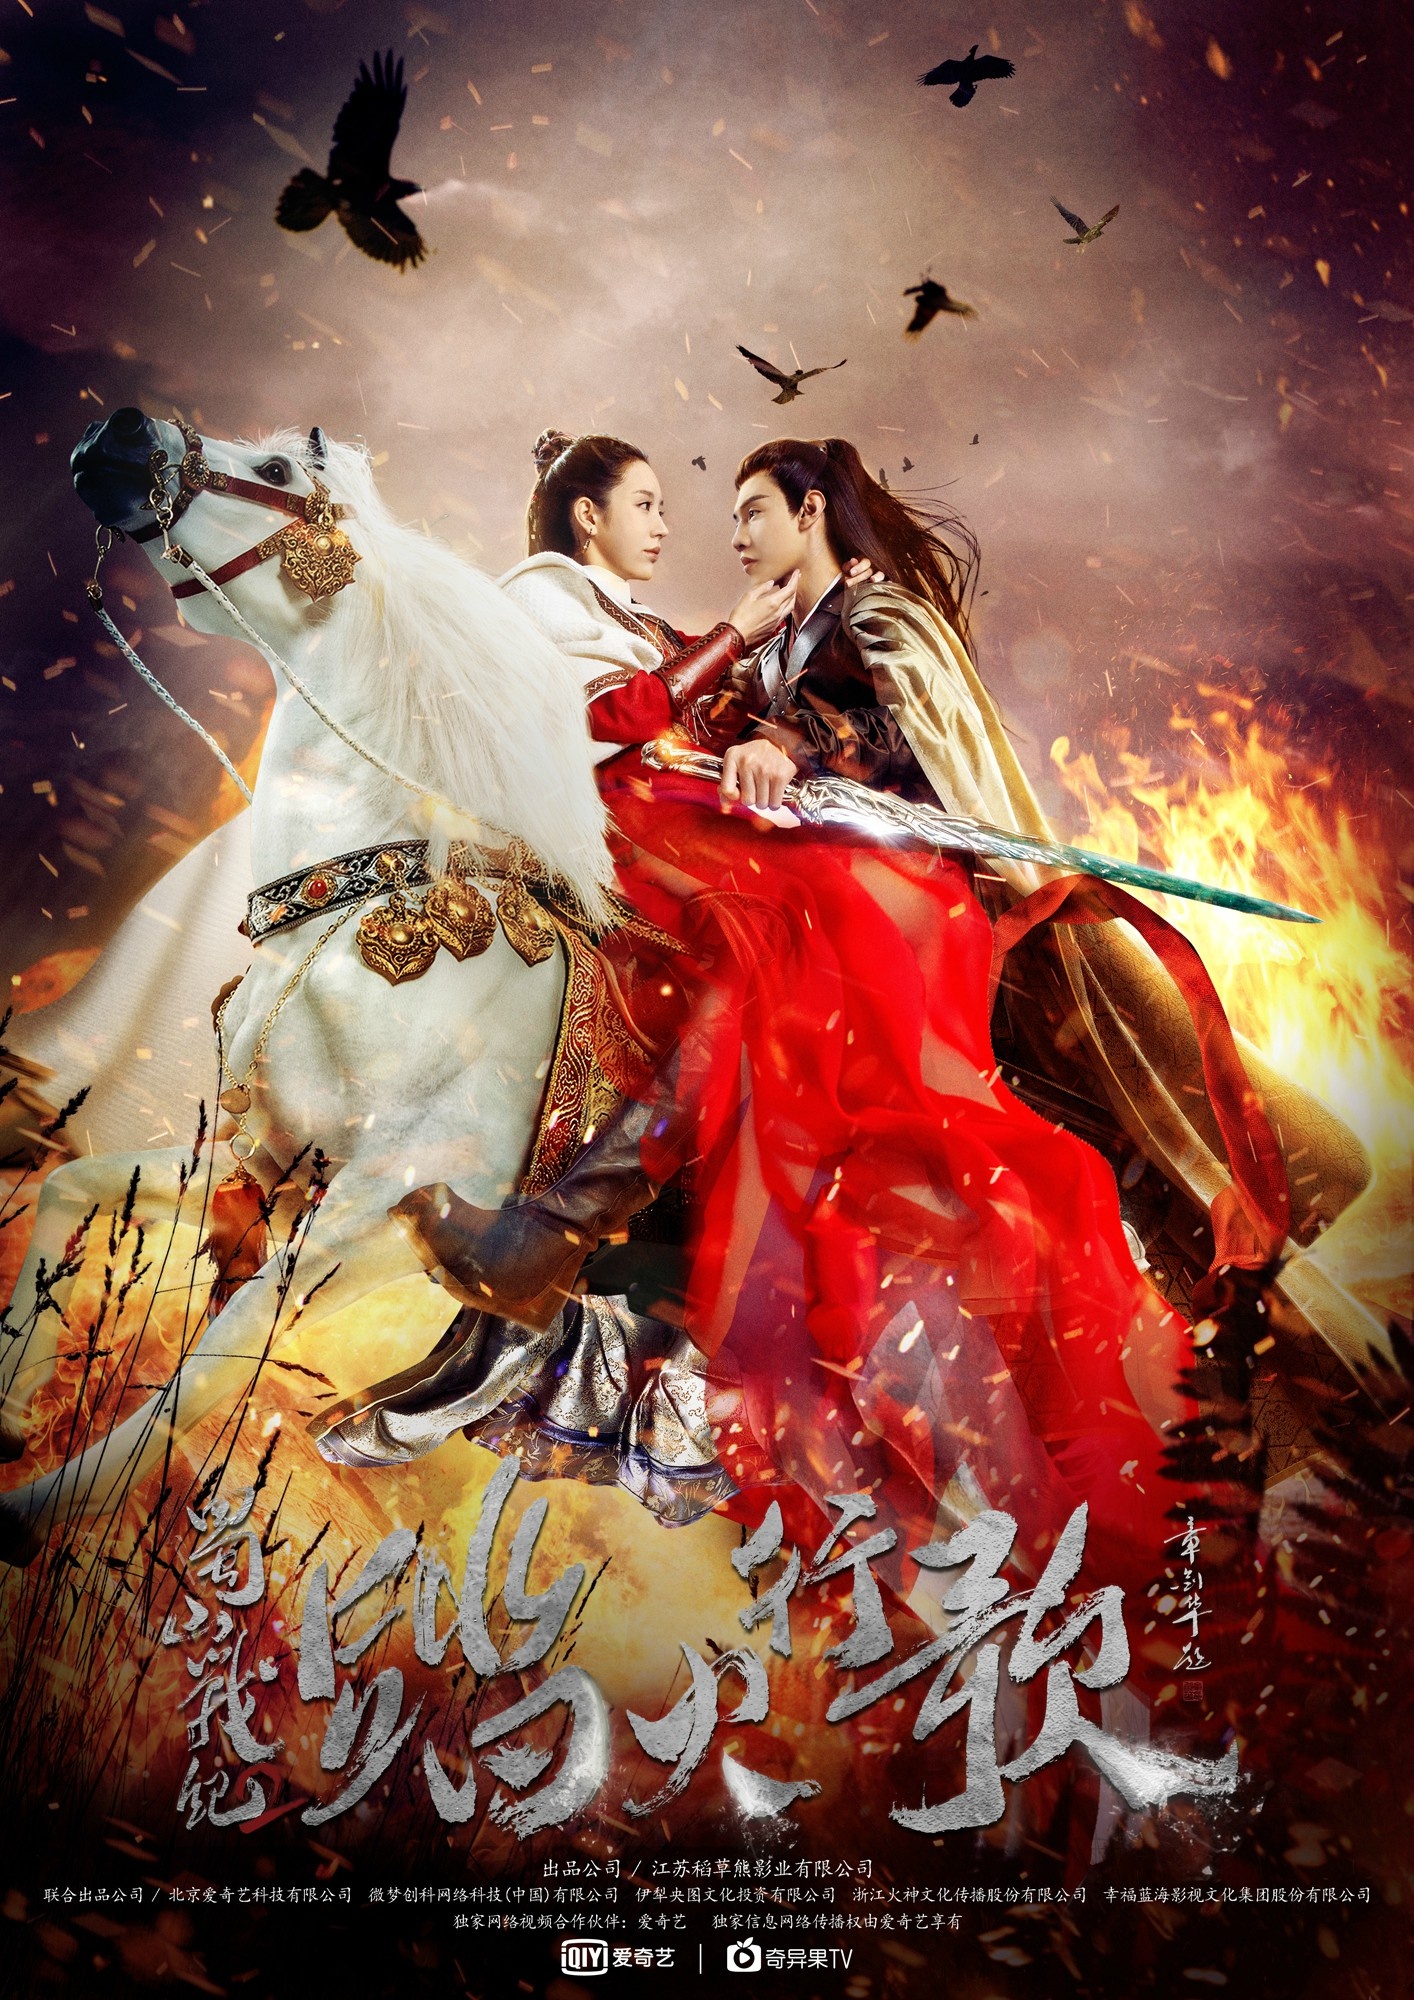 китайские фильмы дорамы фантастика исторические фото 49